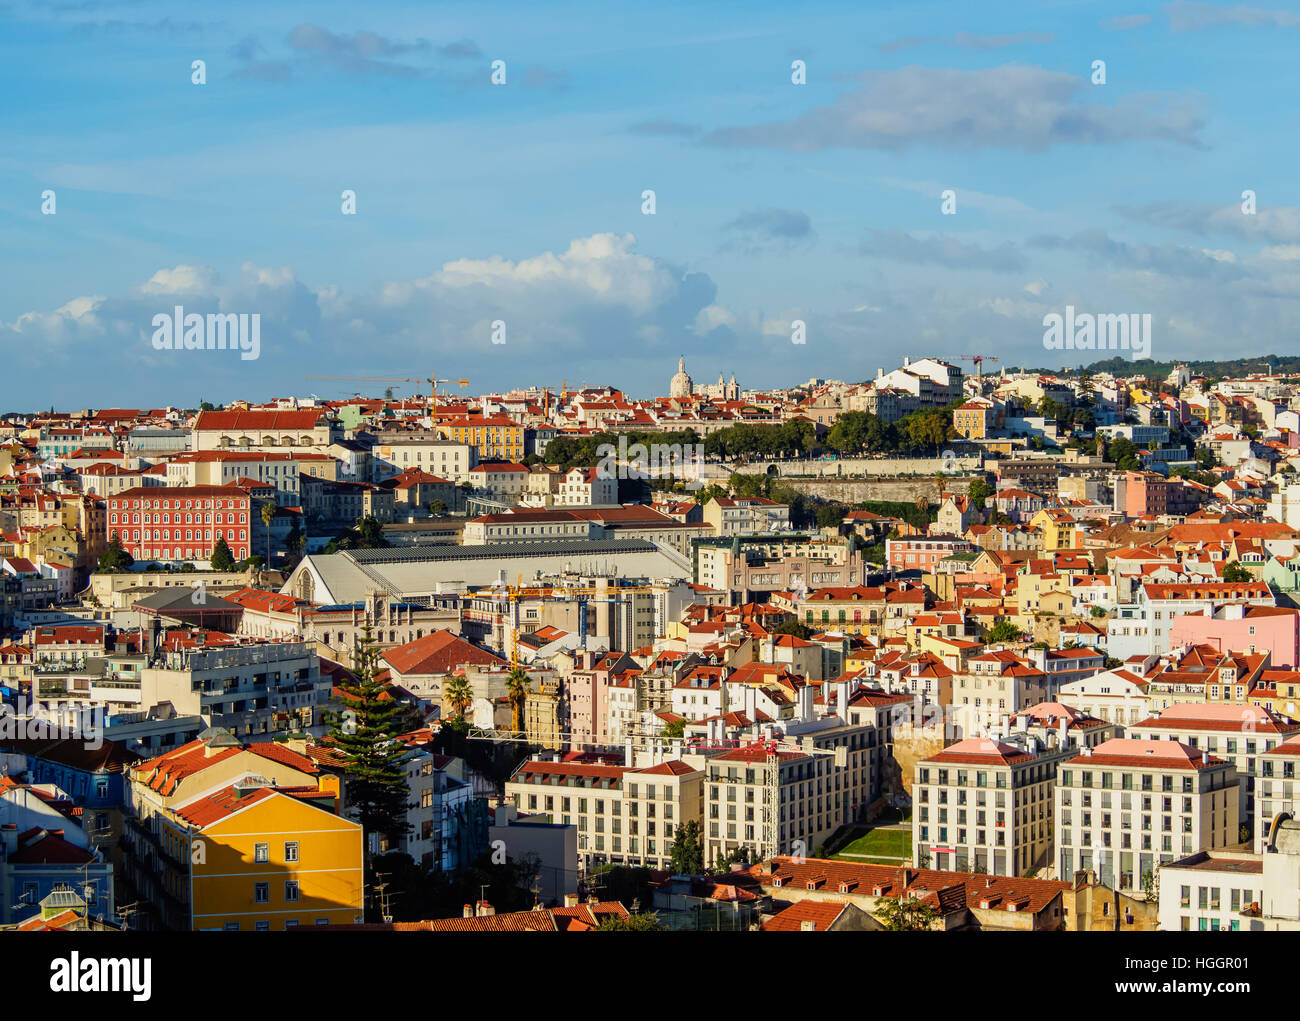 Portugal, Lisbonne, paysage urbain vu du Miradouro da Graca. Banque D'Images